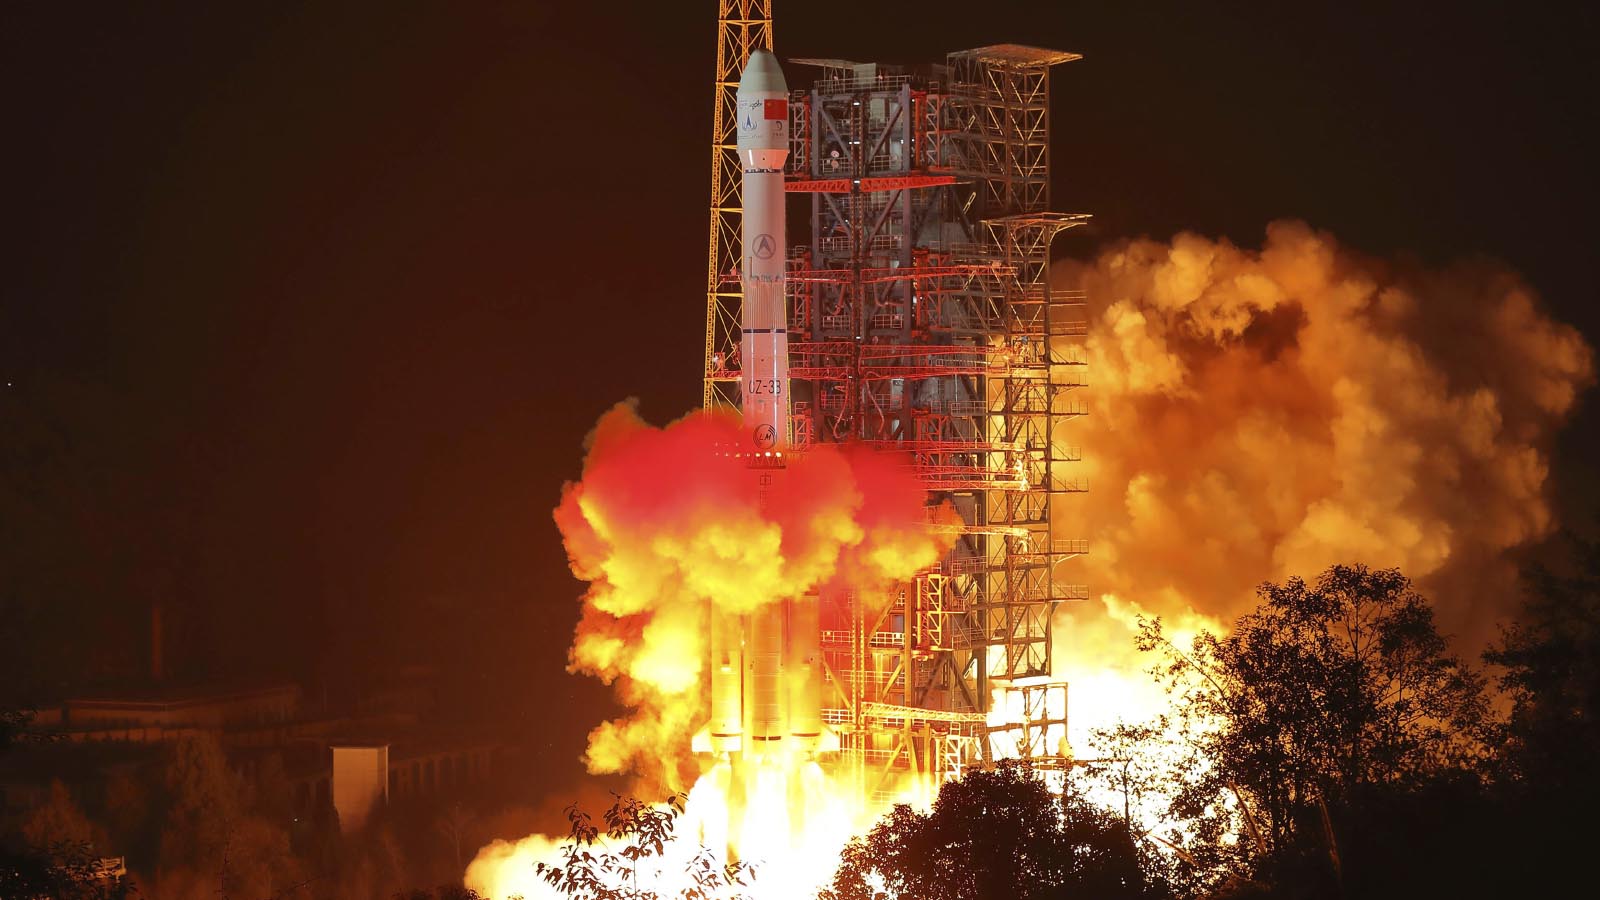 שיגור רכב החלל הסיני לצד האפל של הירח (Jiang Hongjing/Xinhua via AP)